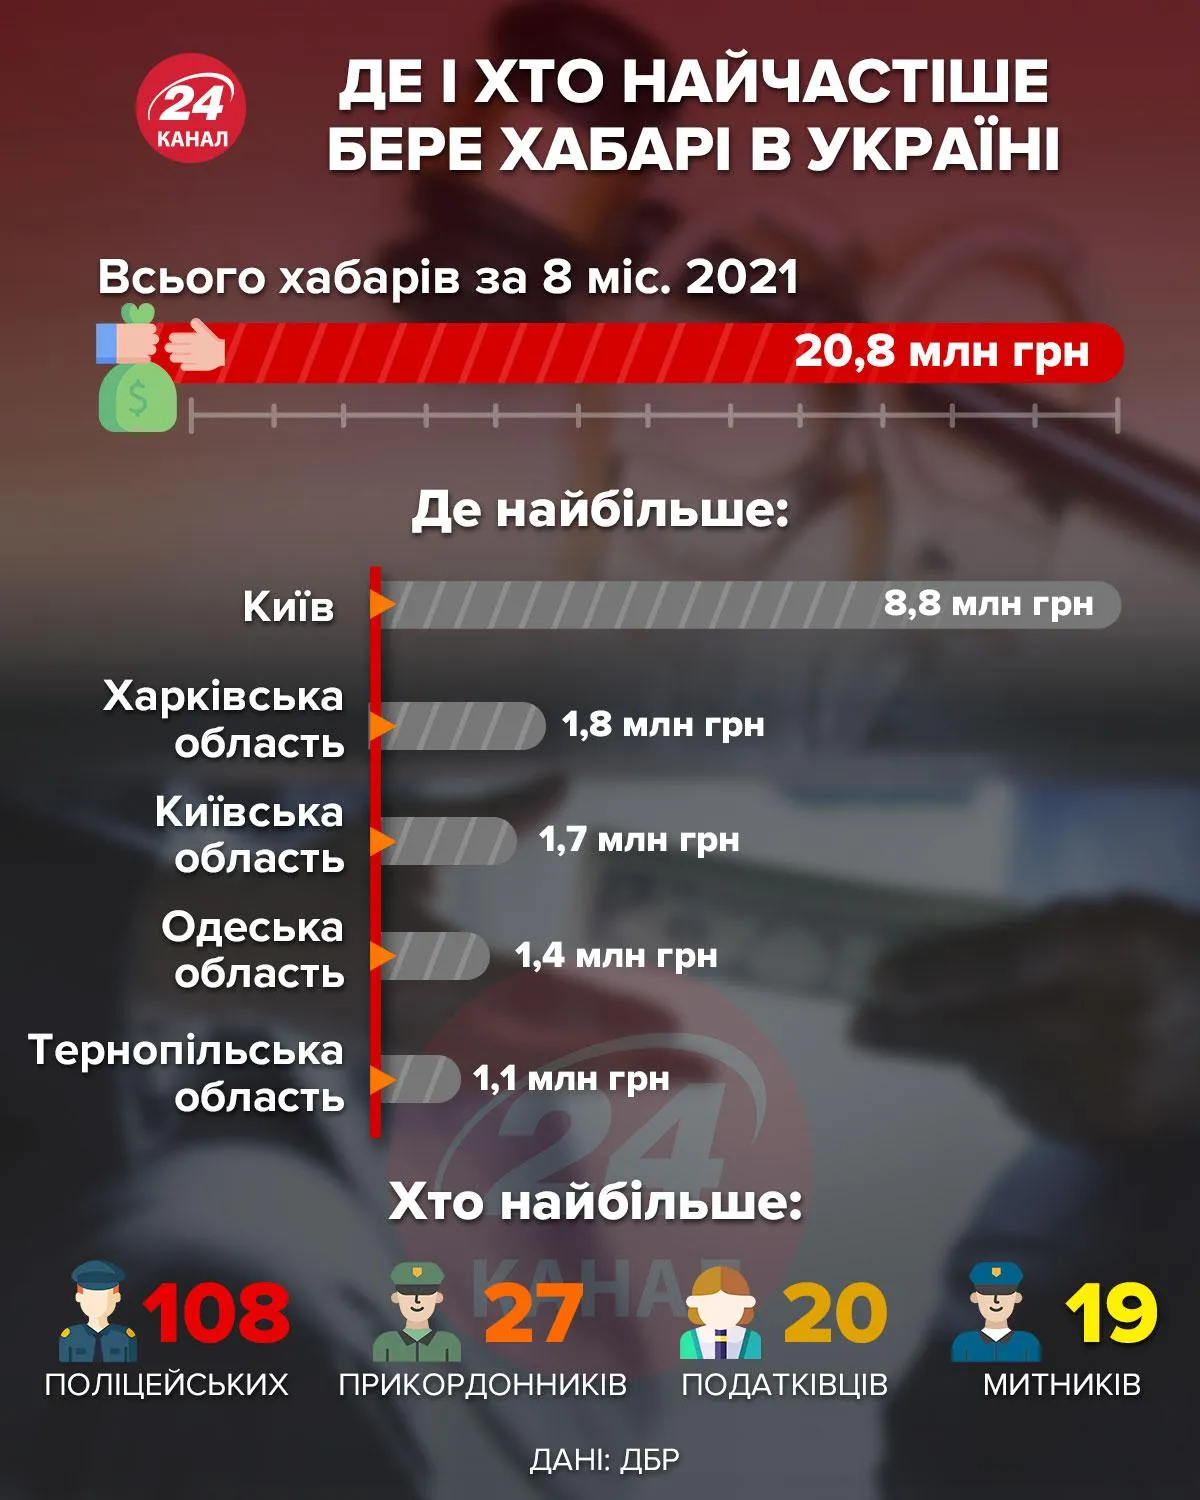 Де і хто найчастіше бере хабарі в Україні / Інфографіка 24 каналу